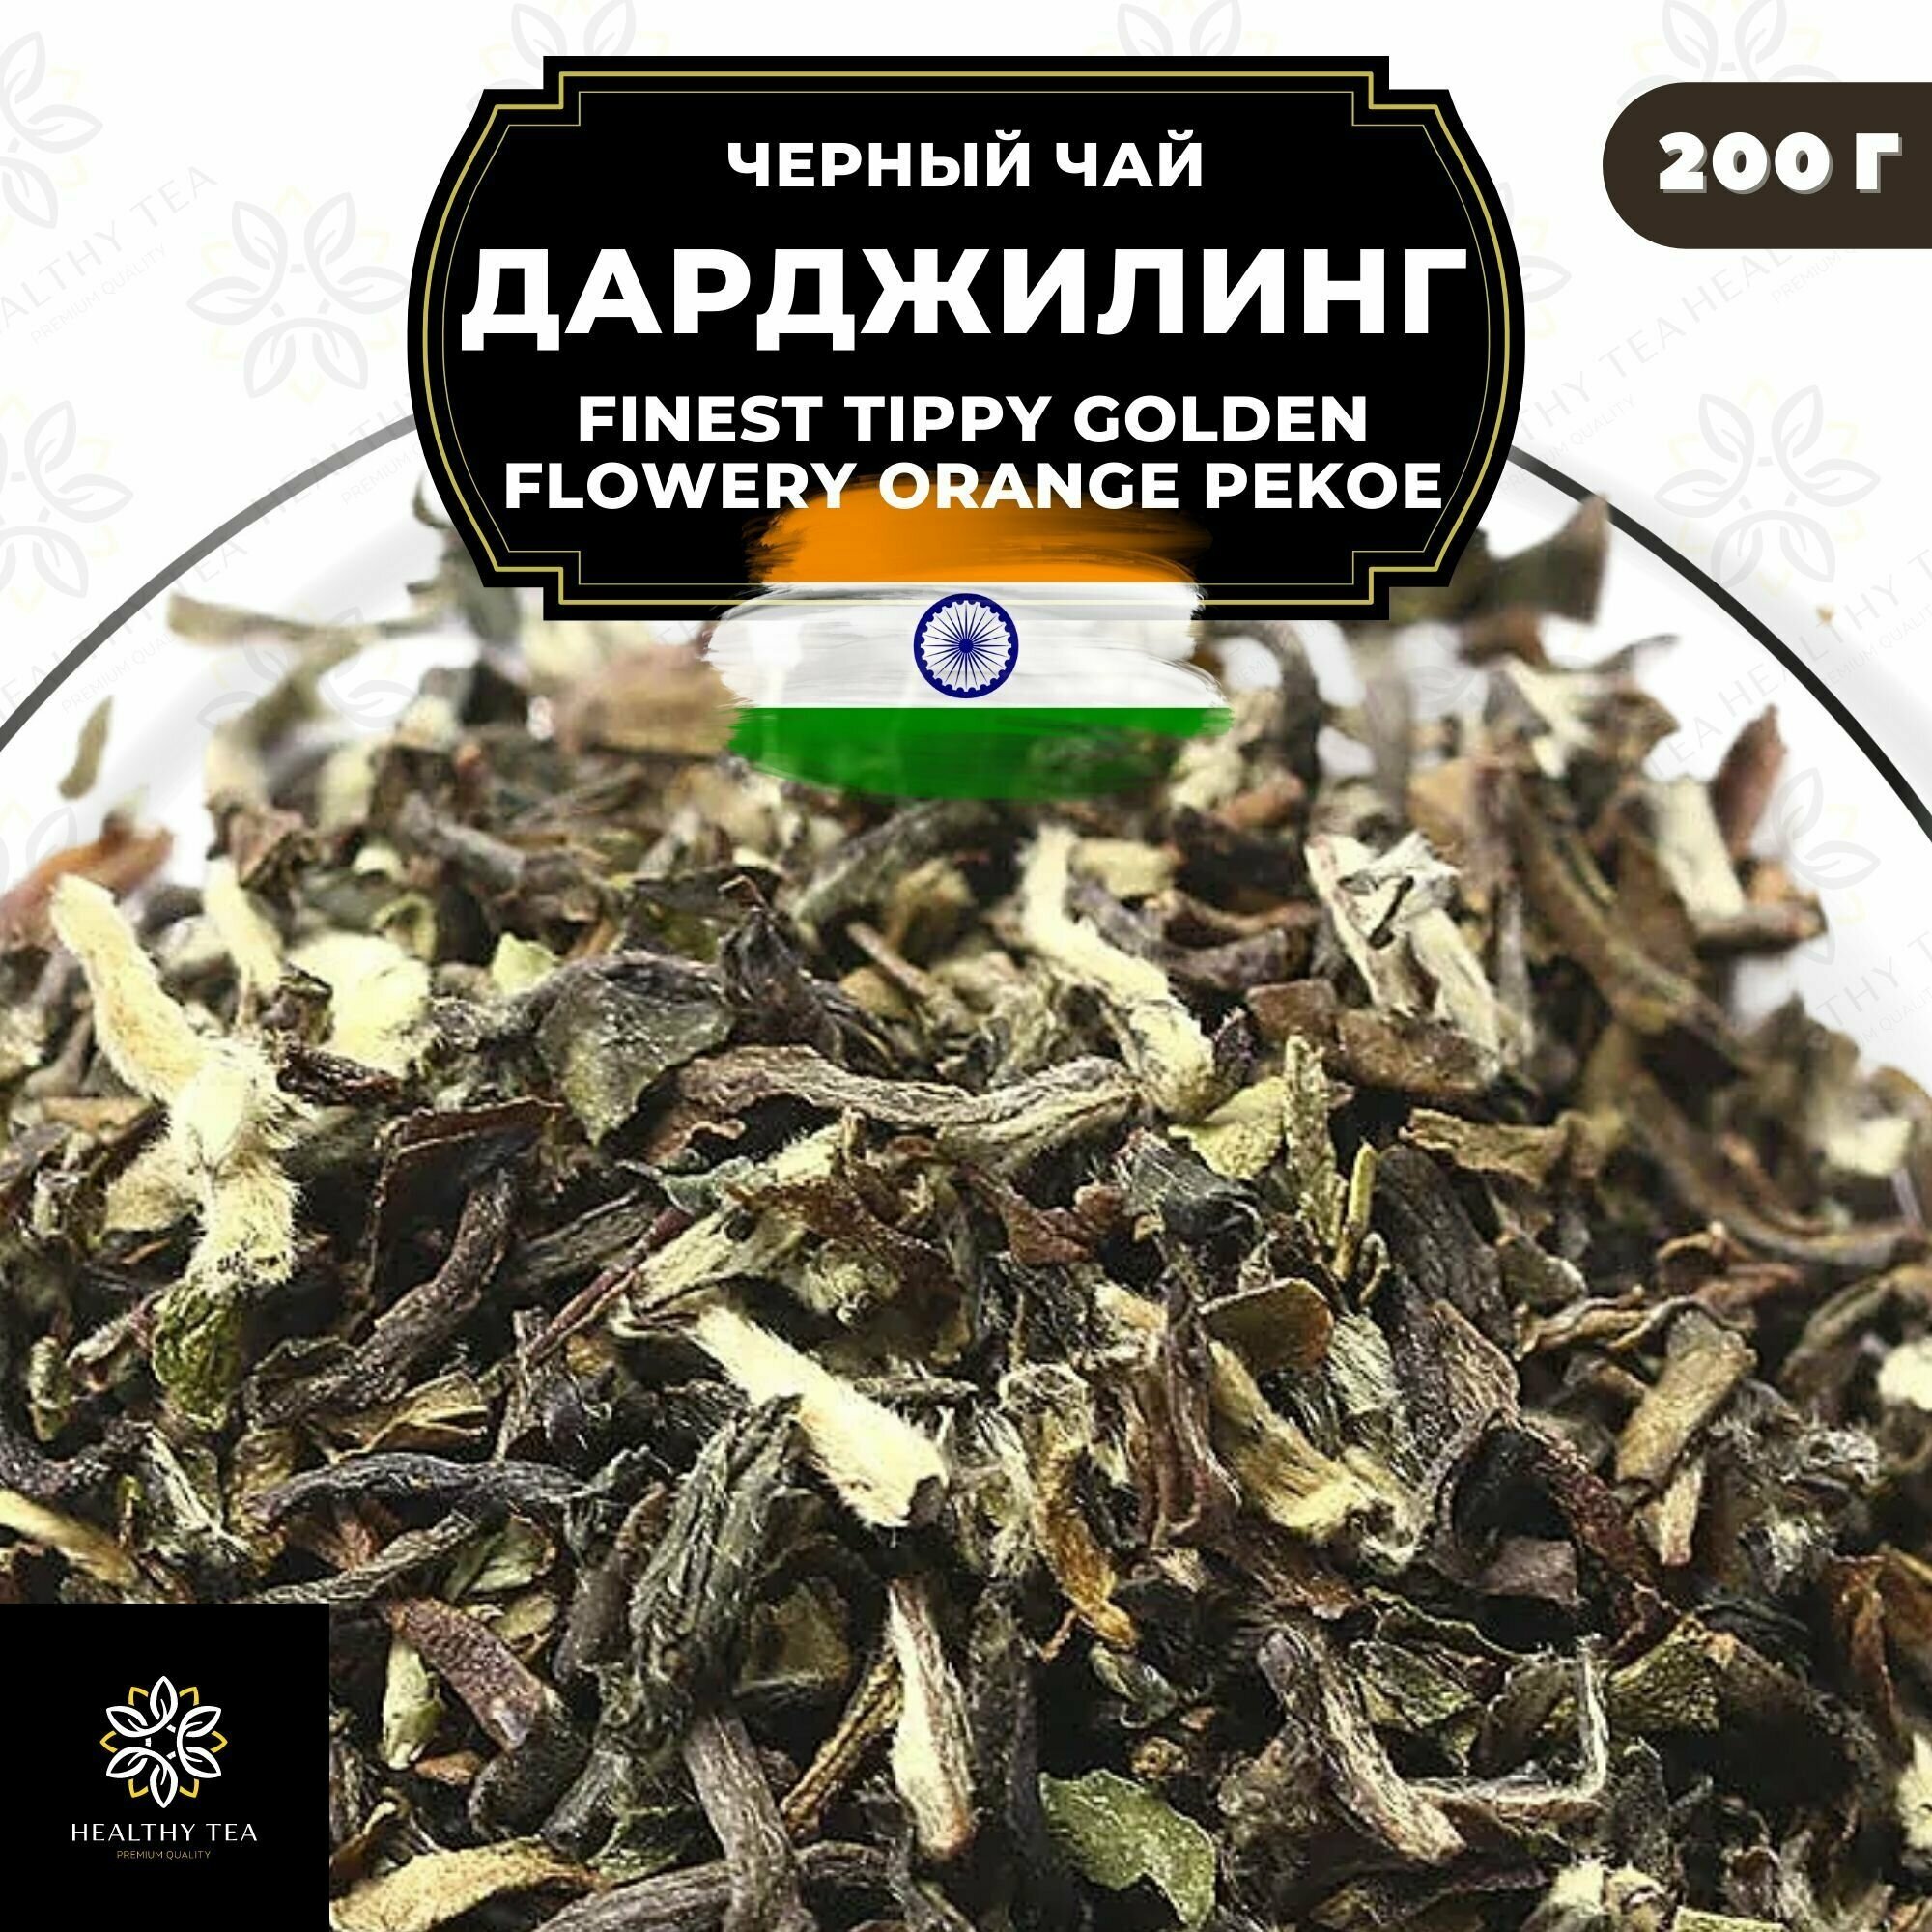 Индийский Черный крупнолистовой чай Дарджилинг Finest Tippy Golden Flowery Orange Pekoe (FTGFOP) Полезный чай / HEALTHY TEA, 200 гр